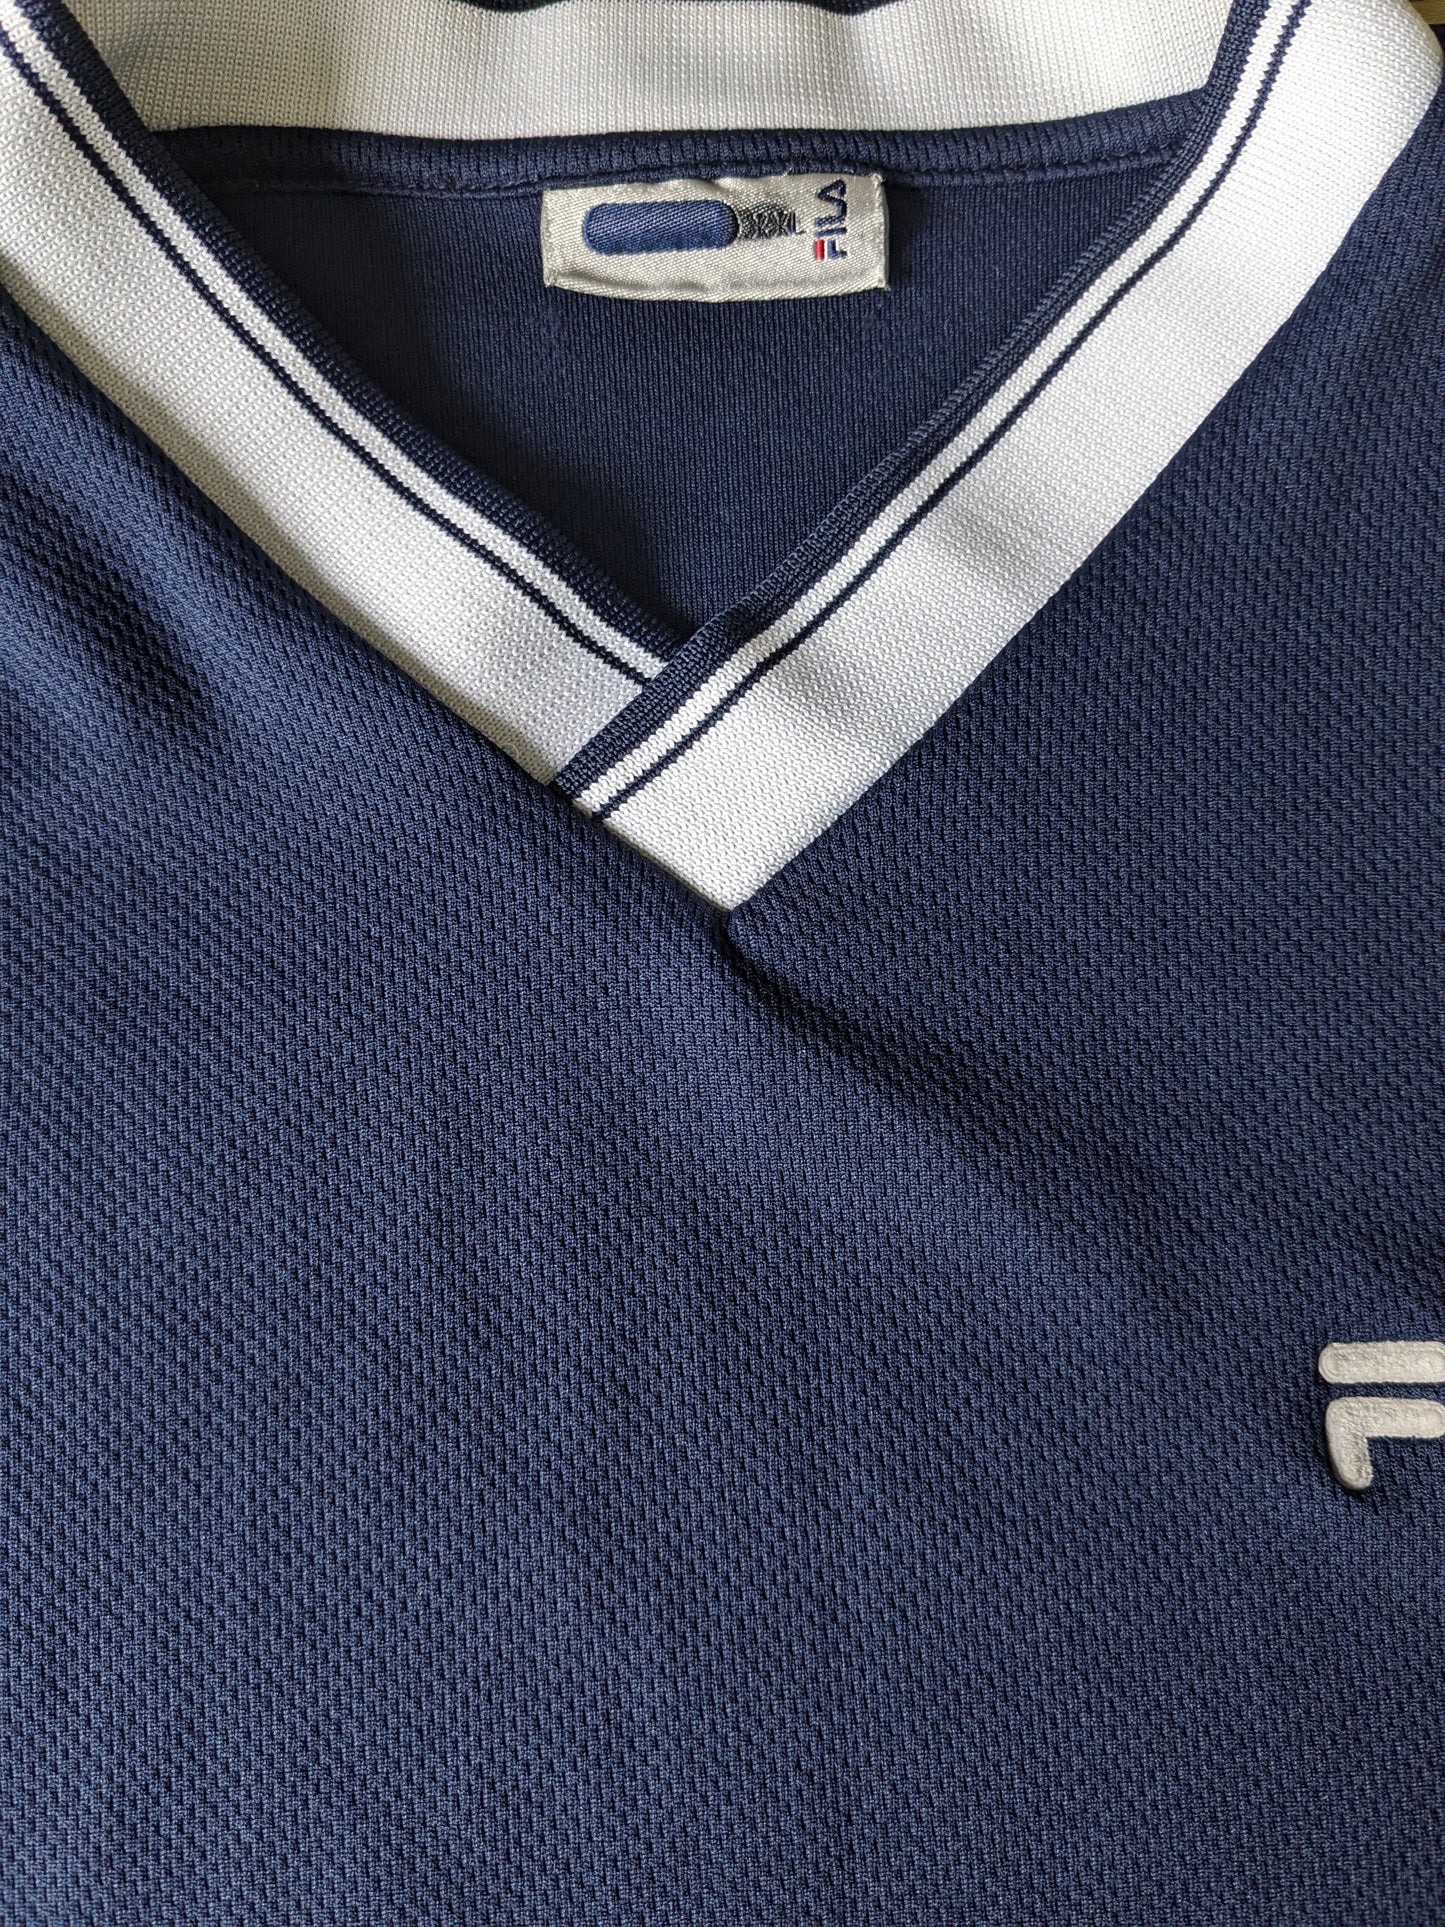 Camicia Fila vintage con scollo a V. Colorato blu scuro. Taglia L.